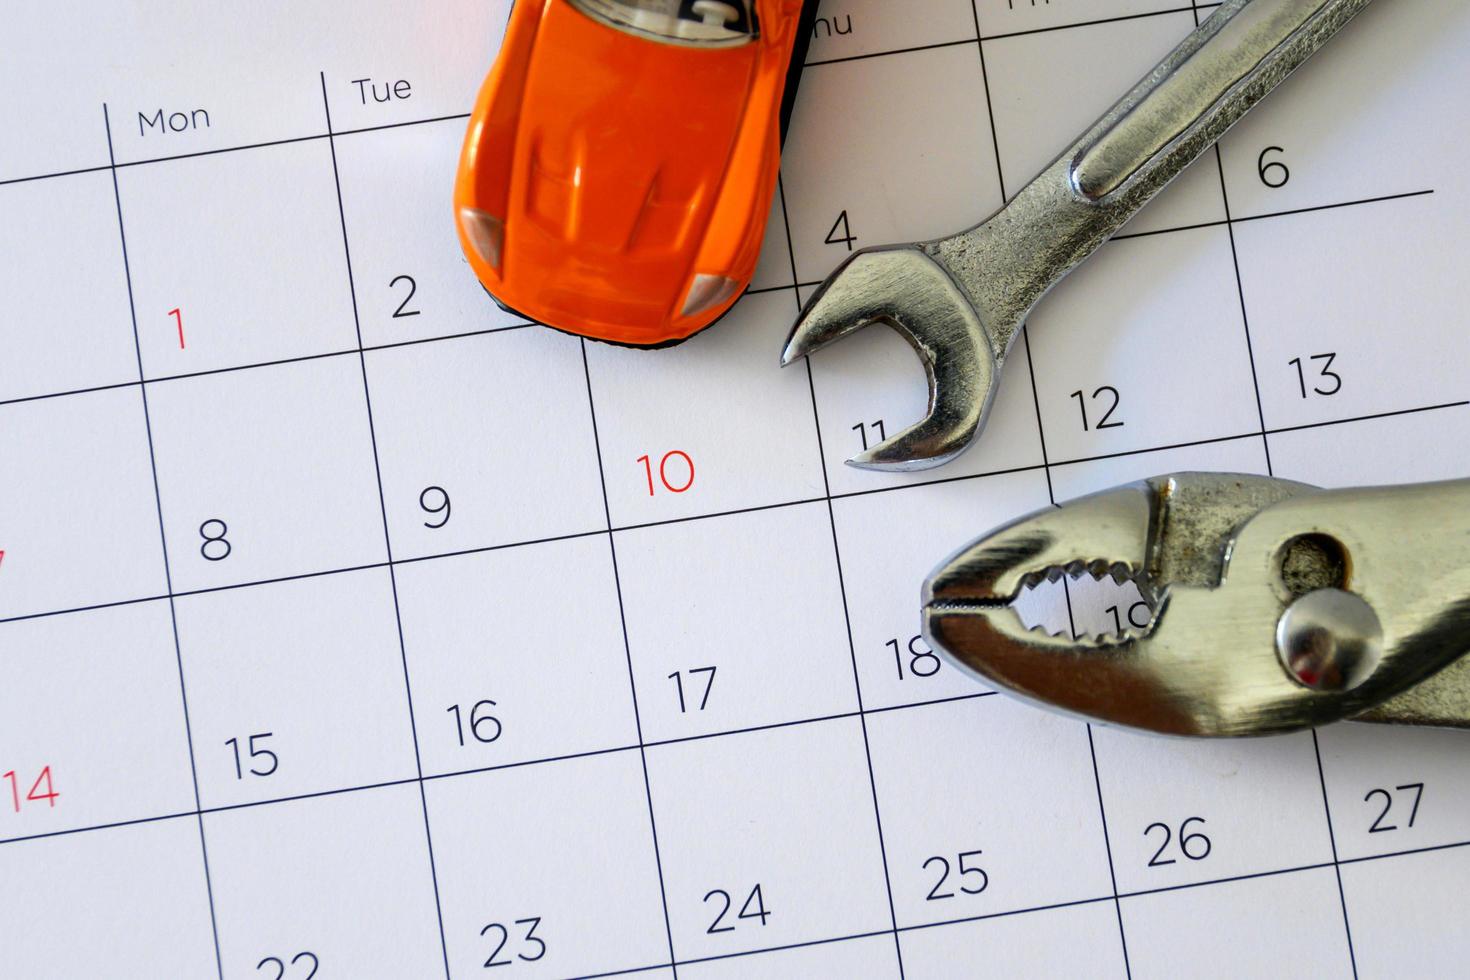 chave inglesa e carro no calendário com números. conceito de reparo foto